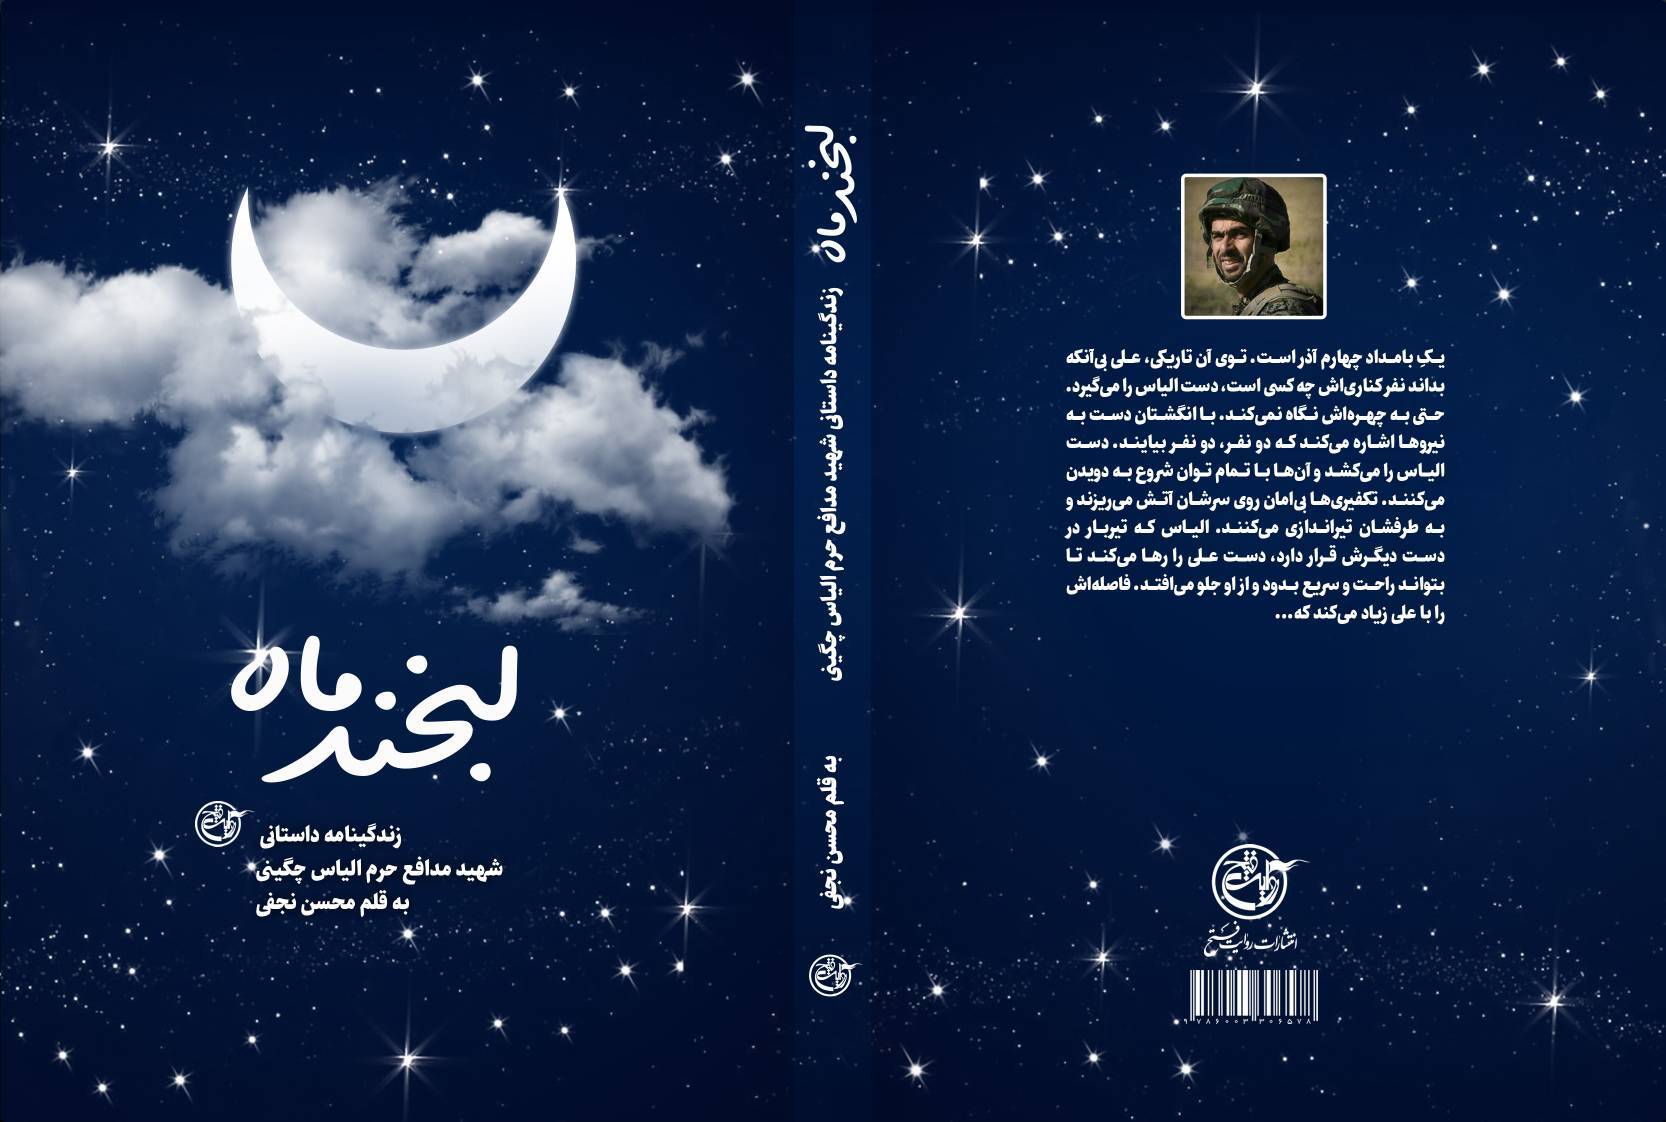 روایت نگارش کتاب لبخند ماه از زبان نویسنده